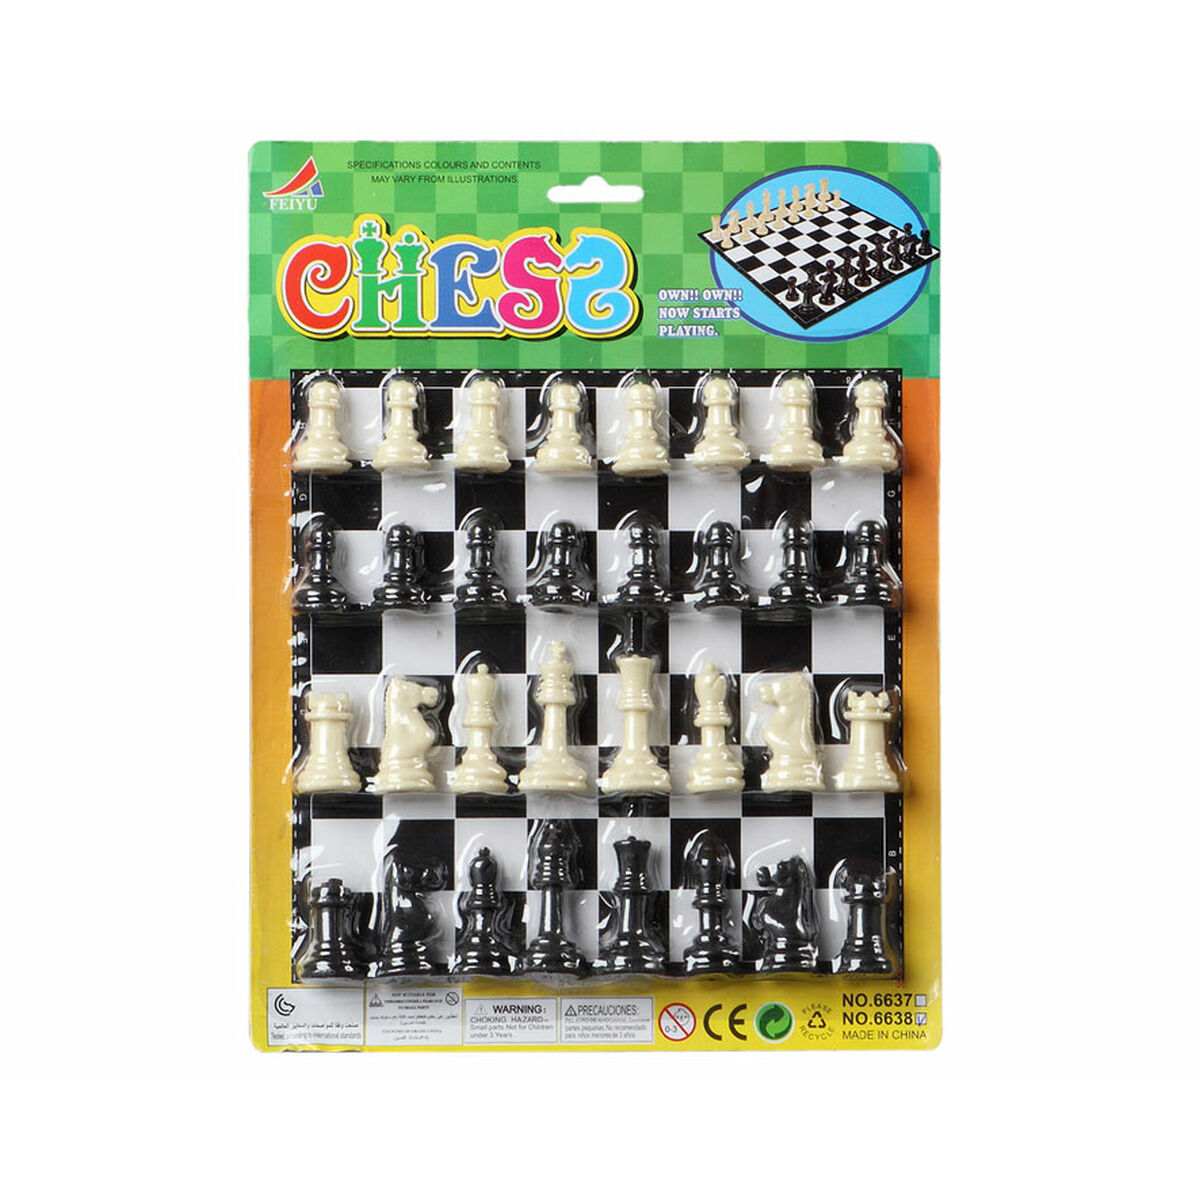 Chess 29 x 19 cm